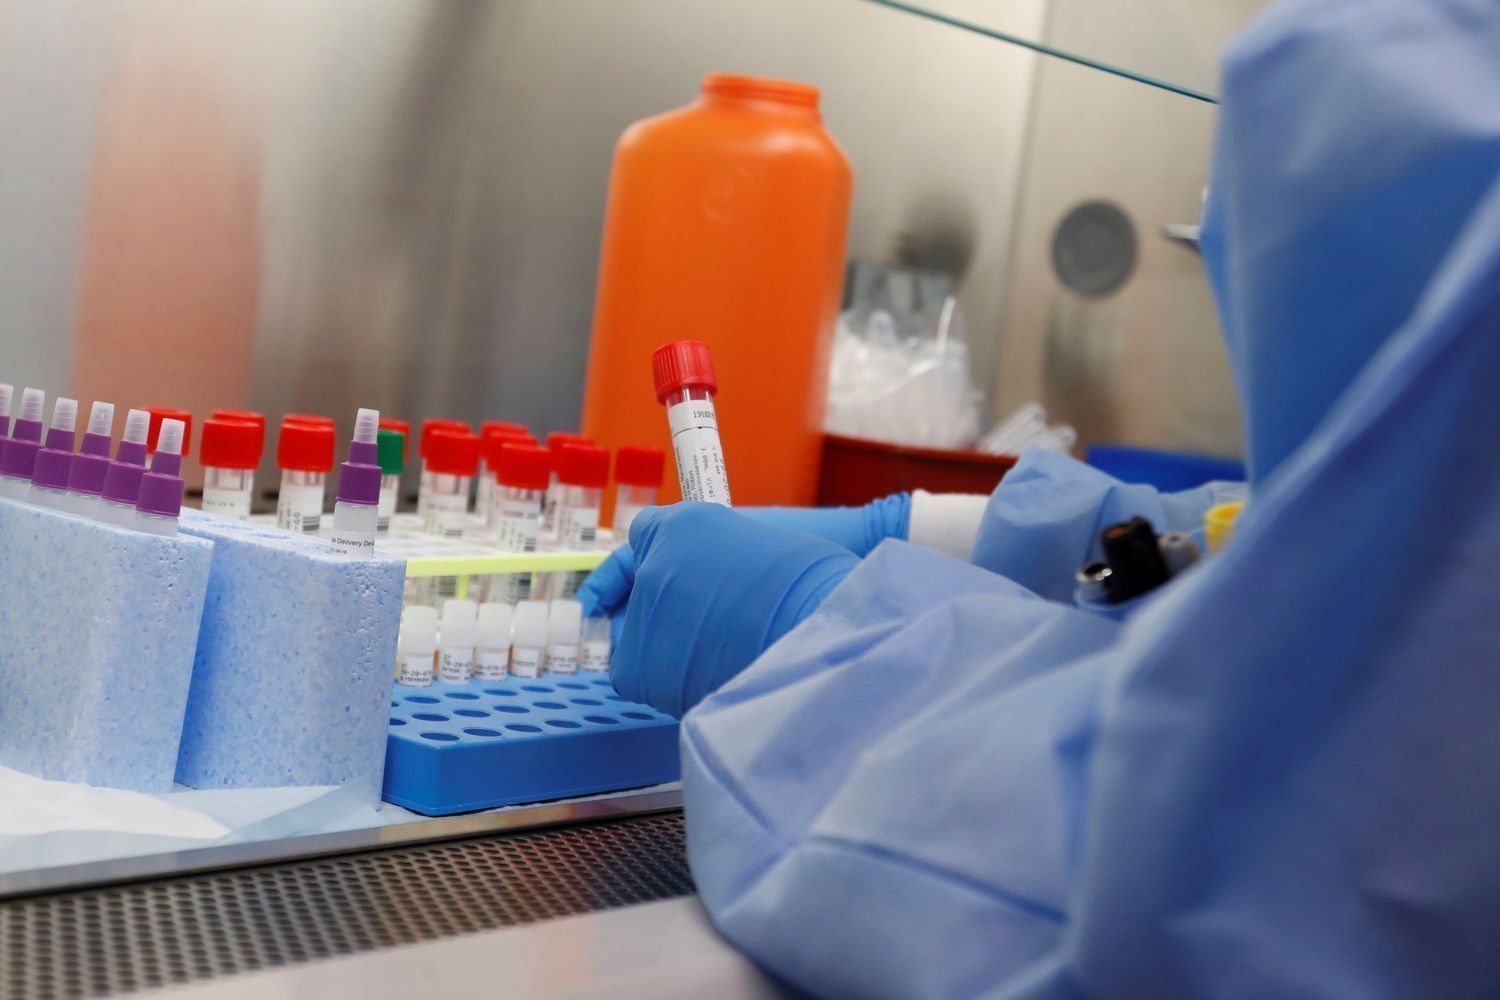 Πραγματοποιήθηκαν σχεδόν 1,3 εκατομμύρια PCR και ταχείες δοκιμές κορανοϊού μεταξύ Μαρτίου-21 Ιανουαρίου